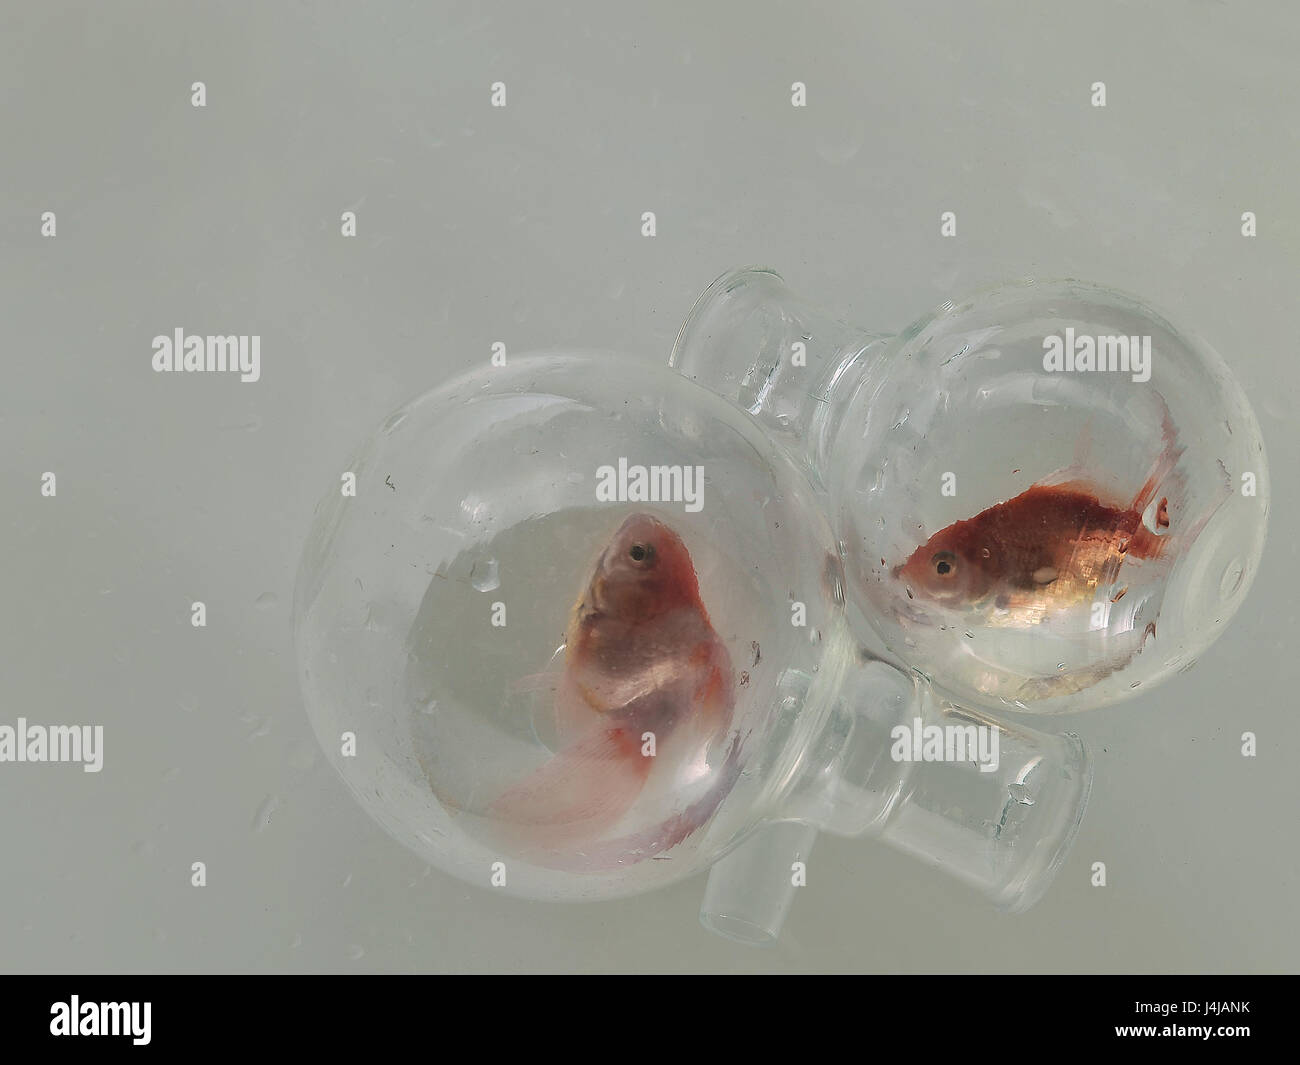 Deux rondes en verre flacons de produits chimiques avec une gorge étroite, à l'intérieur de chaque poisson rouge, sur fond gris lisse texture papier humide. Banque D'Images